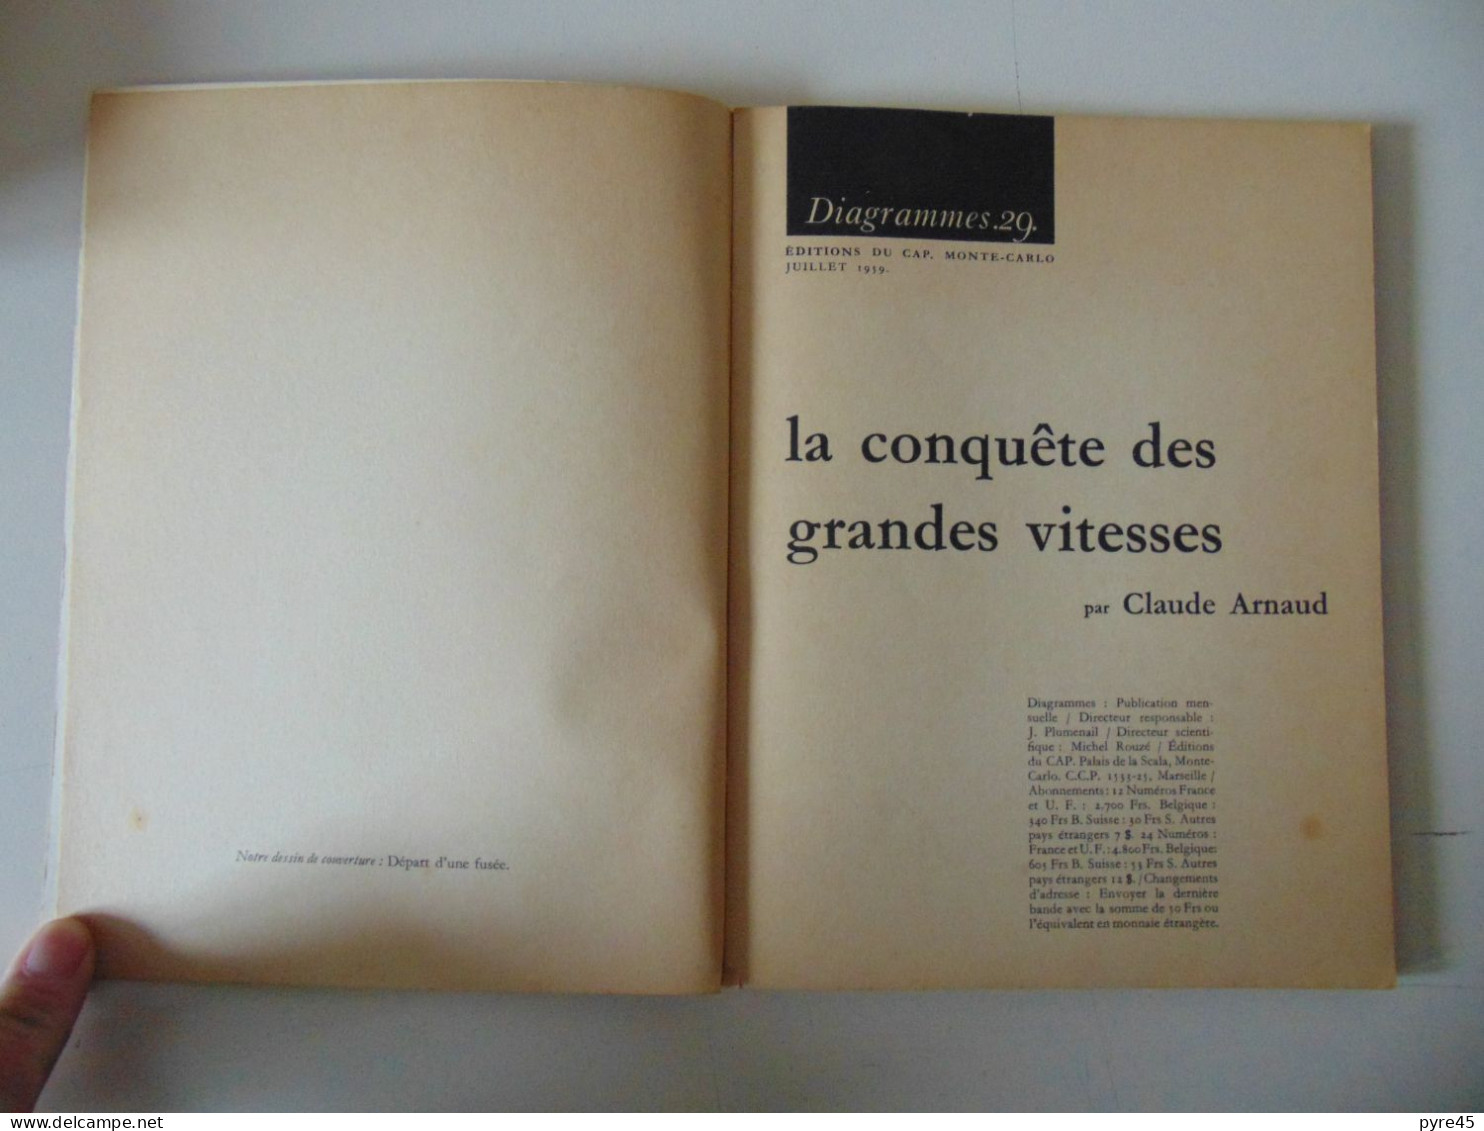 REVUE DIAGRAMMES 29 LA CONQUETE DES GRANDES VITESSES JUILLET 1959 - Science